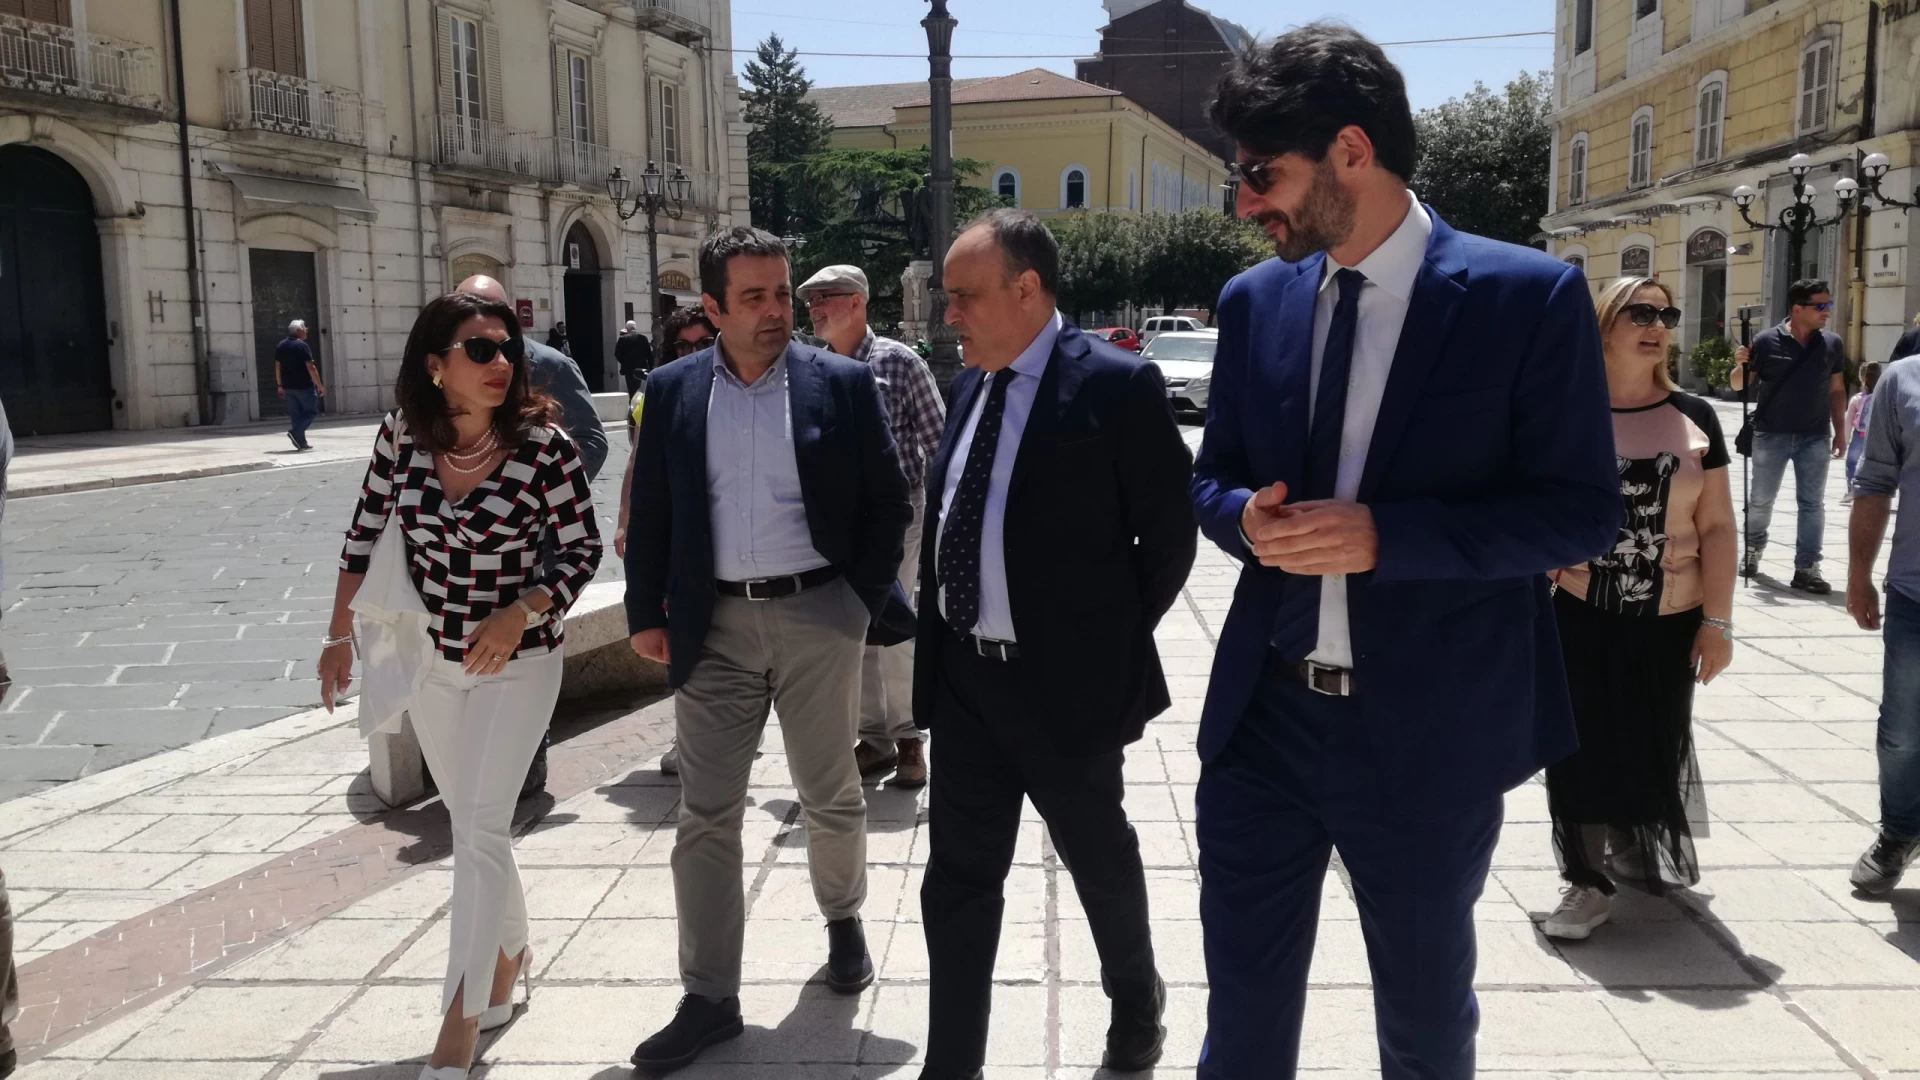 Campobasso: il Ministro Bonisoli tira la volata a Gravina. Guarda le foto della visita in città.